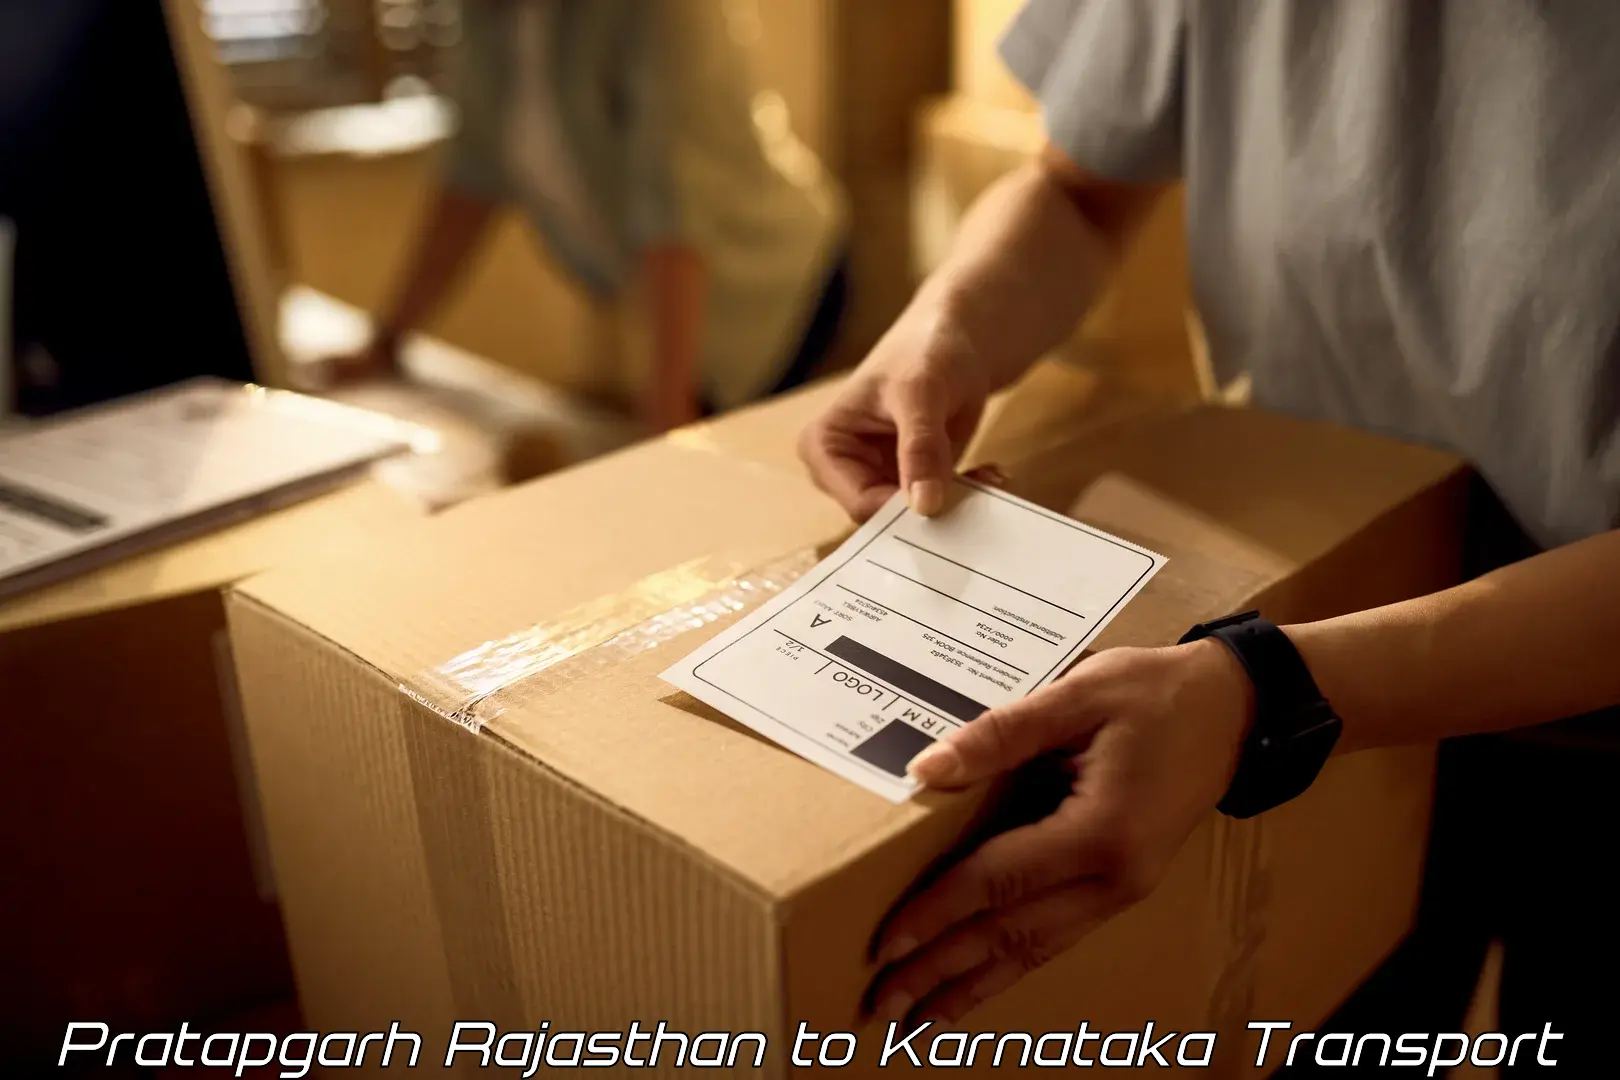 Truck transport companies in India Pratapgarh Rajasthan to Pavagada